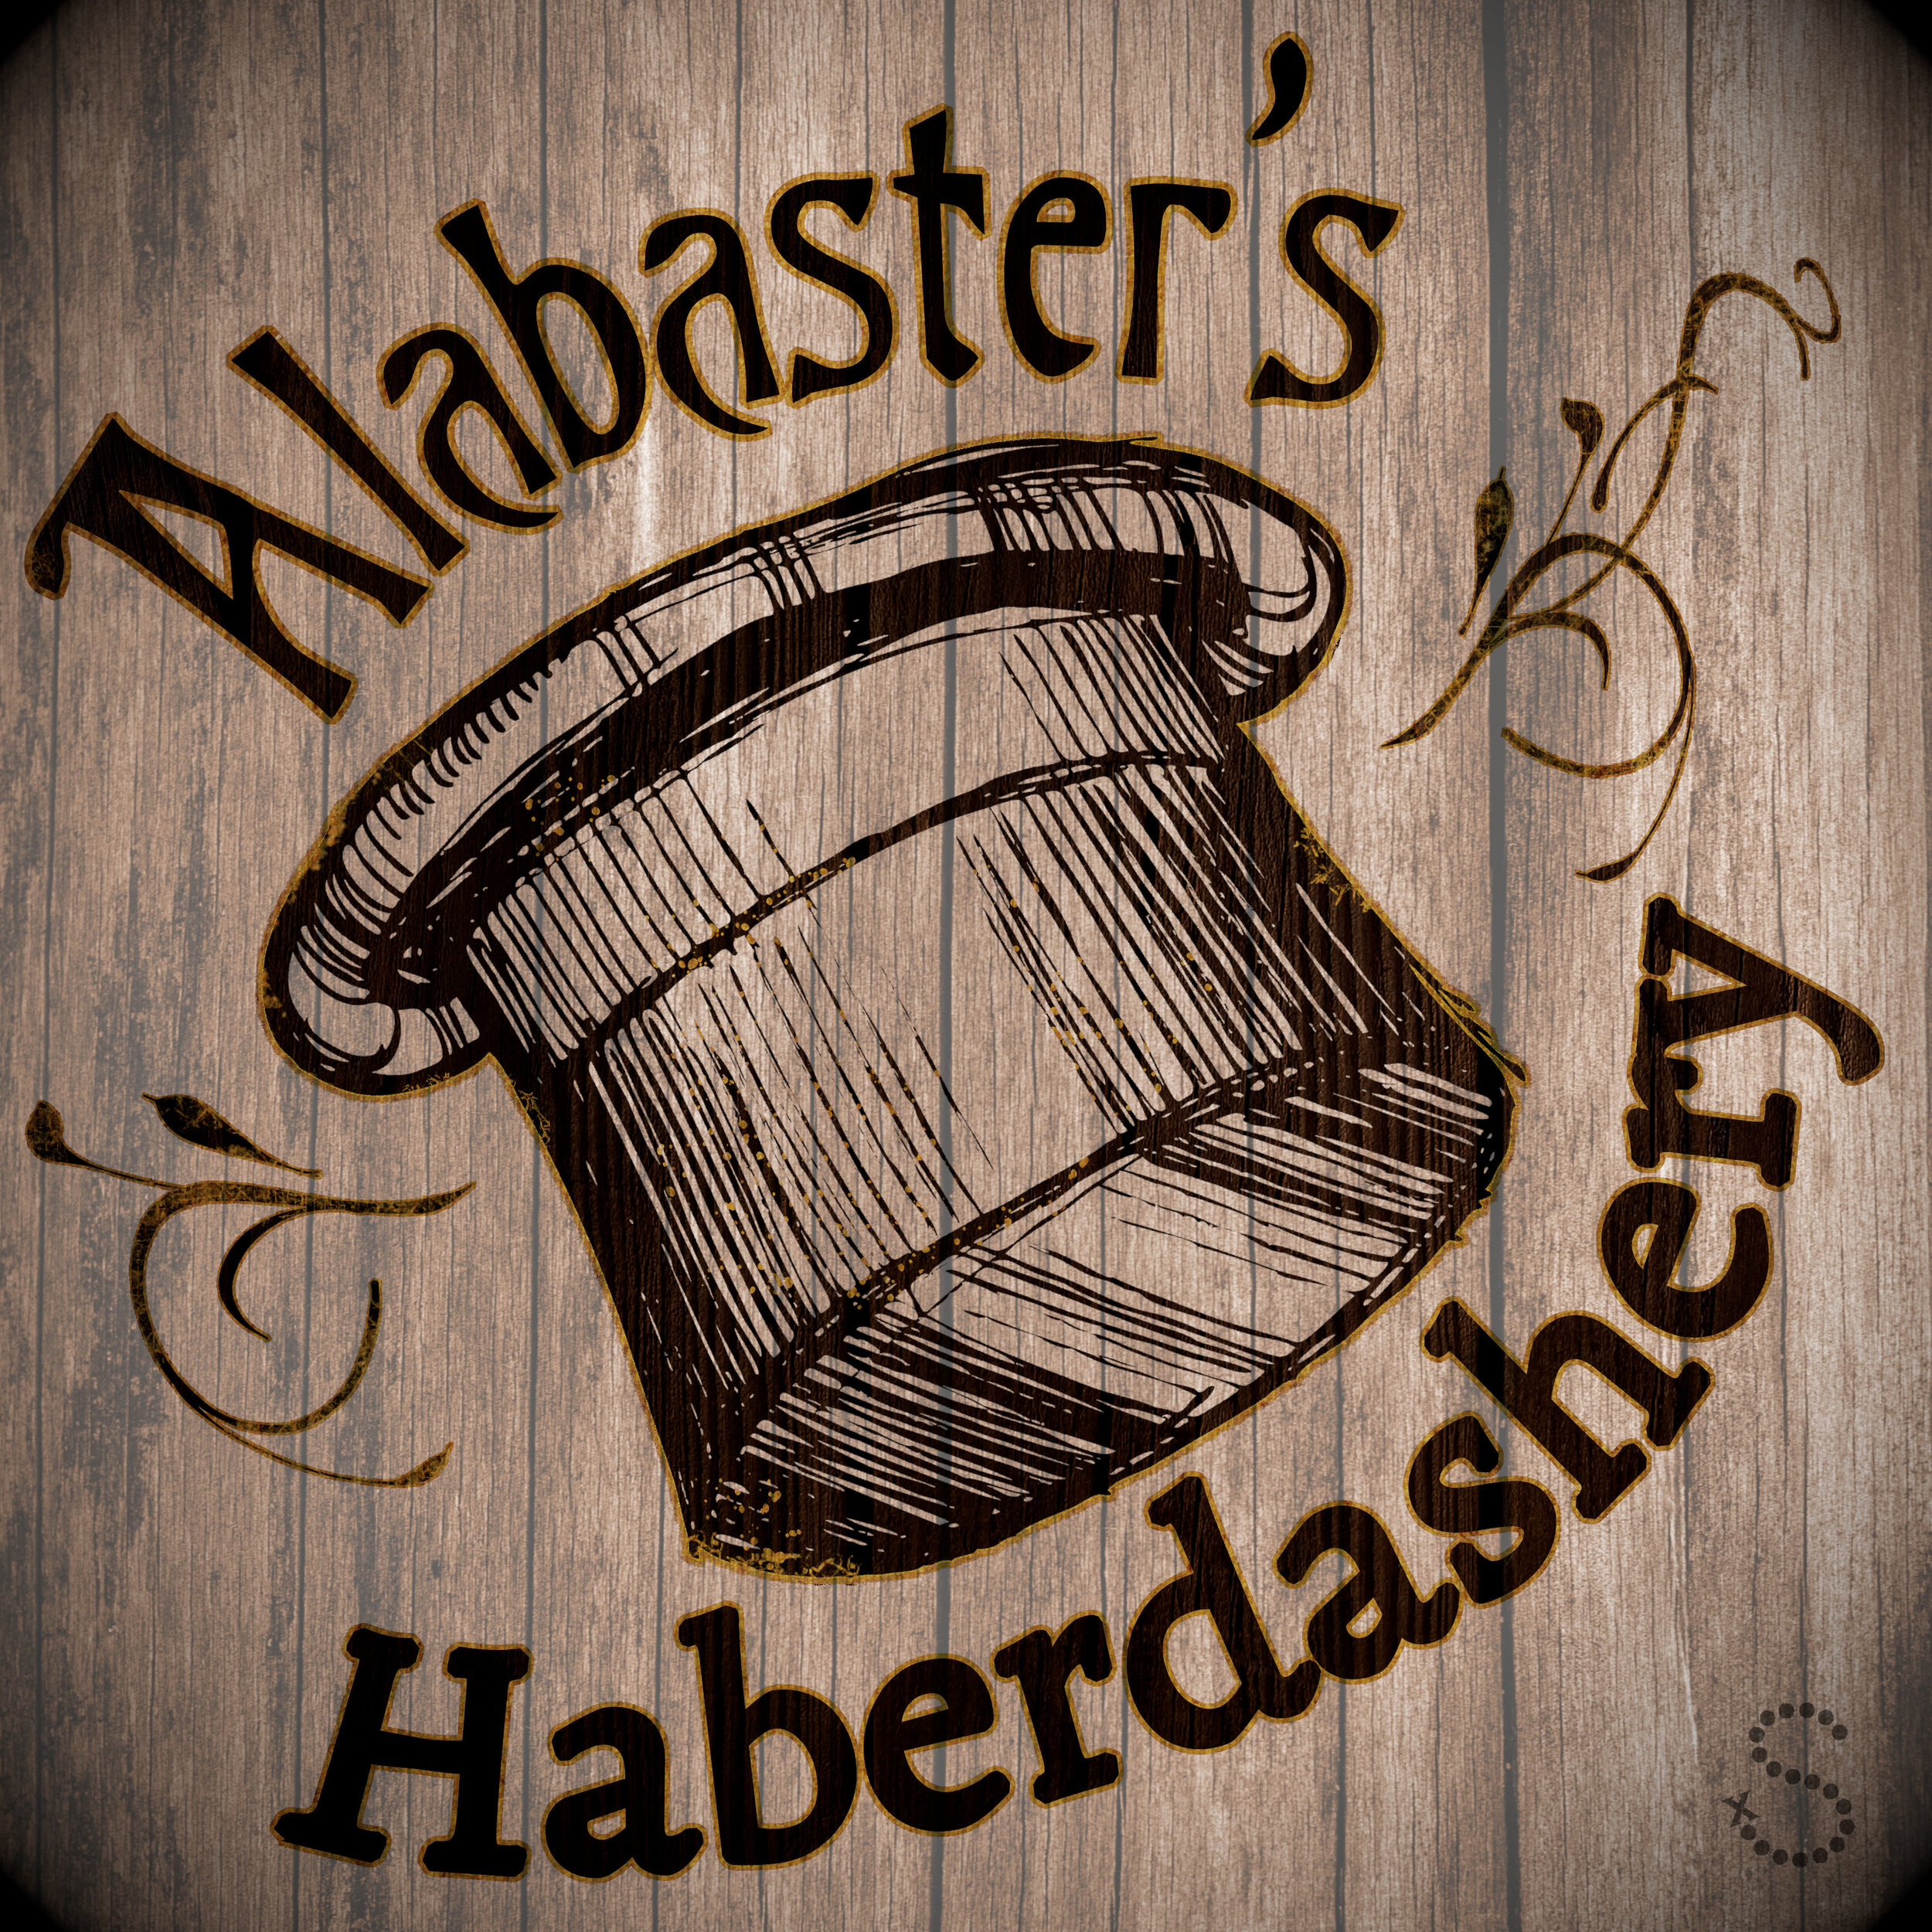 Alabaster's Haberdashery